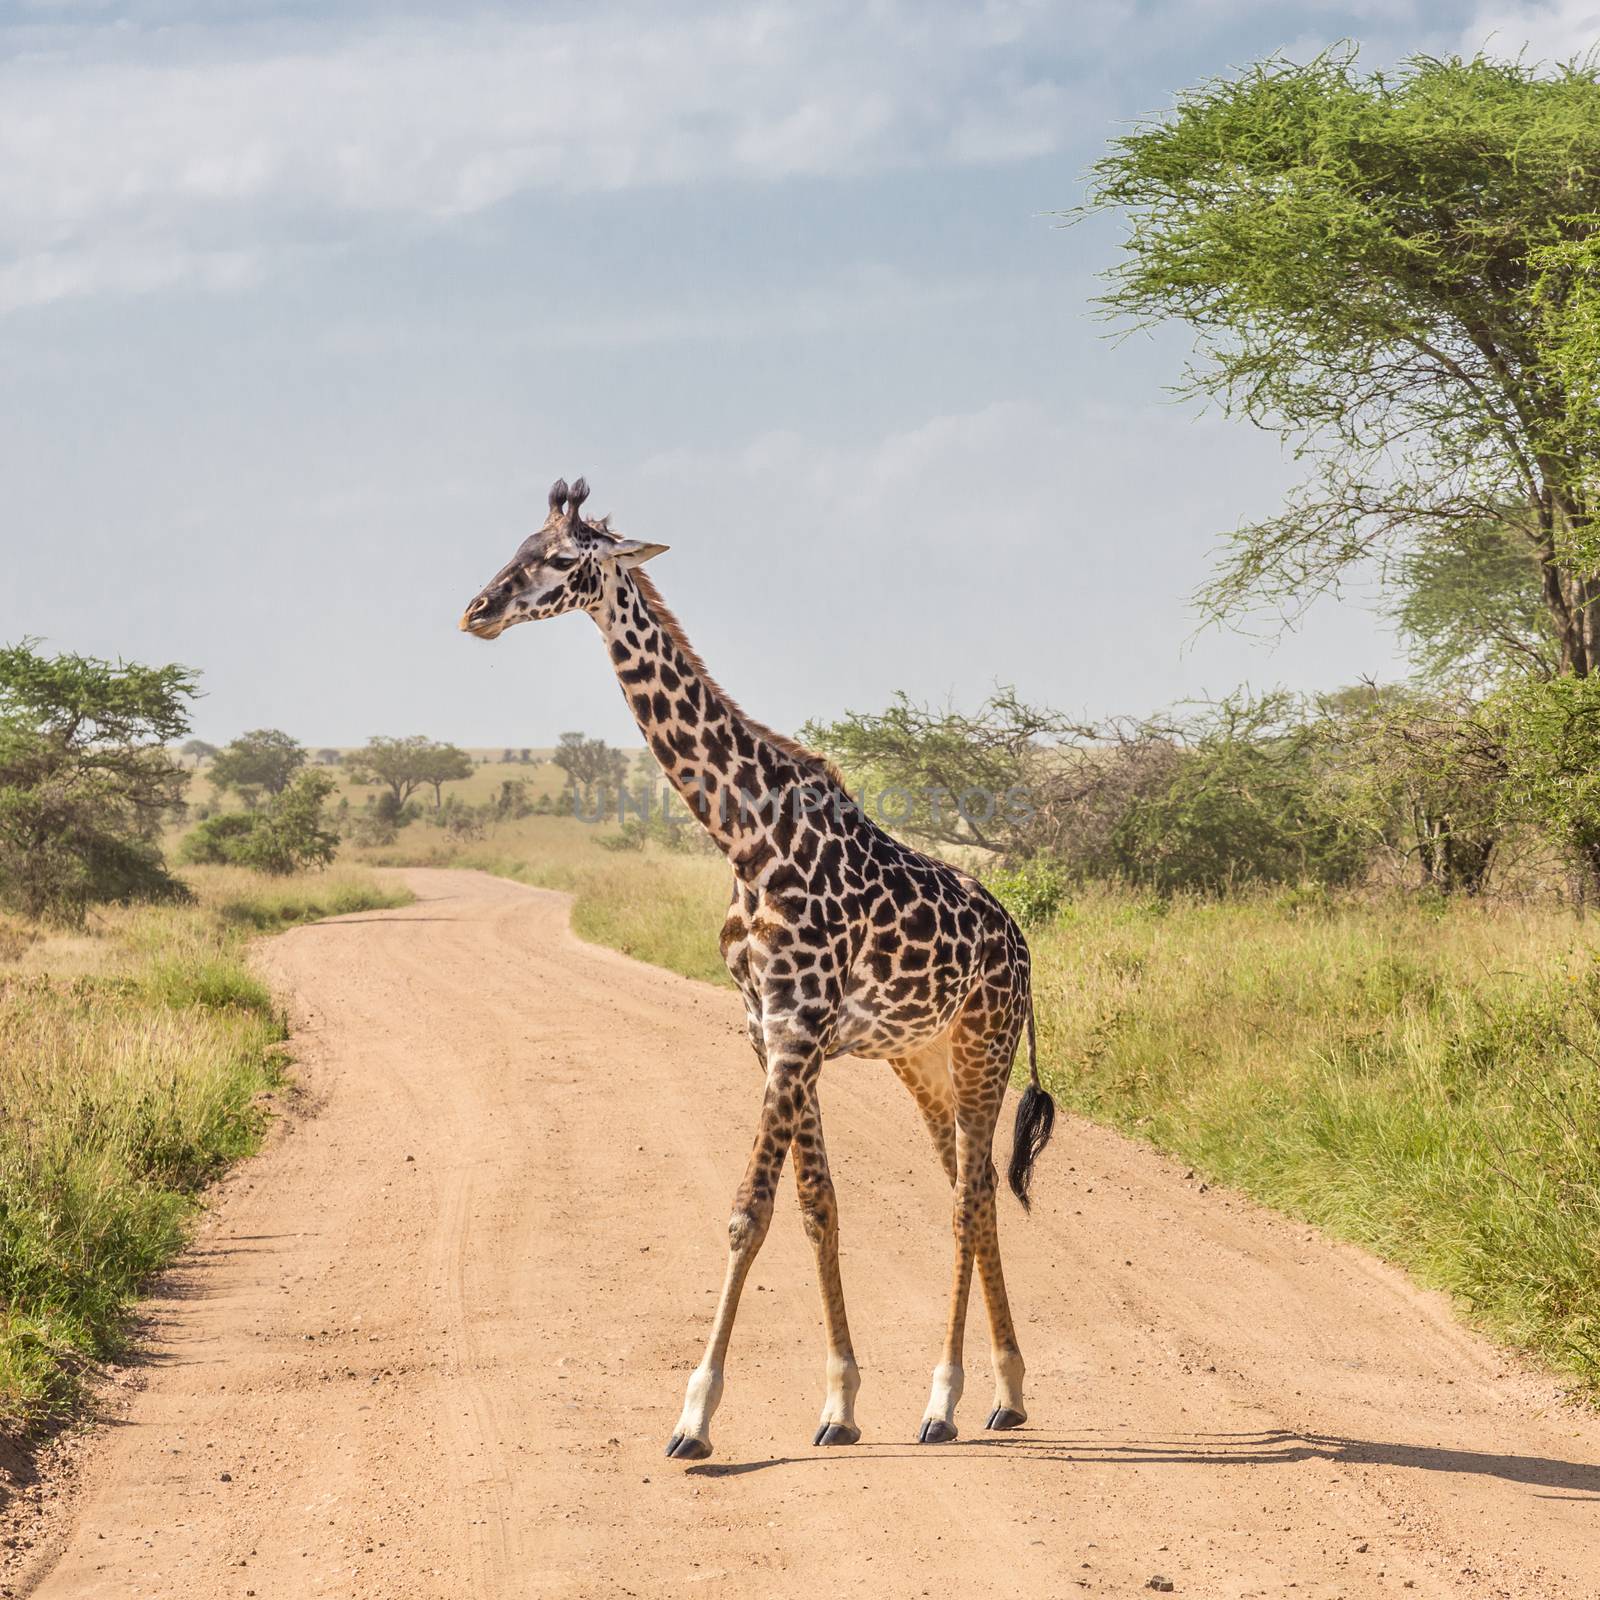 Solitary wild giraffe crossing dirt road in Amboseli national park, Kenya.